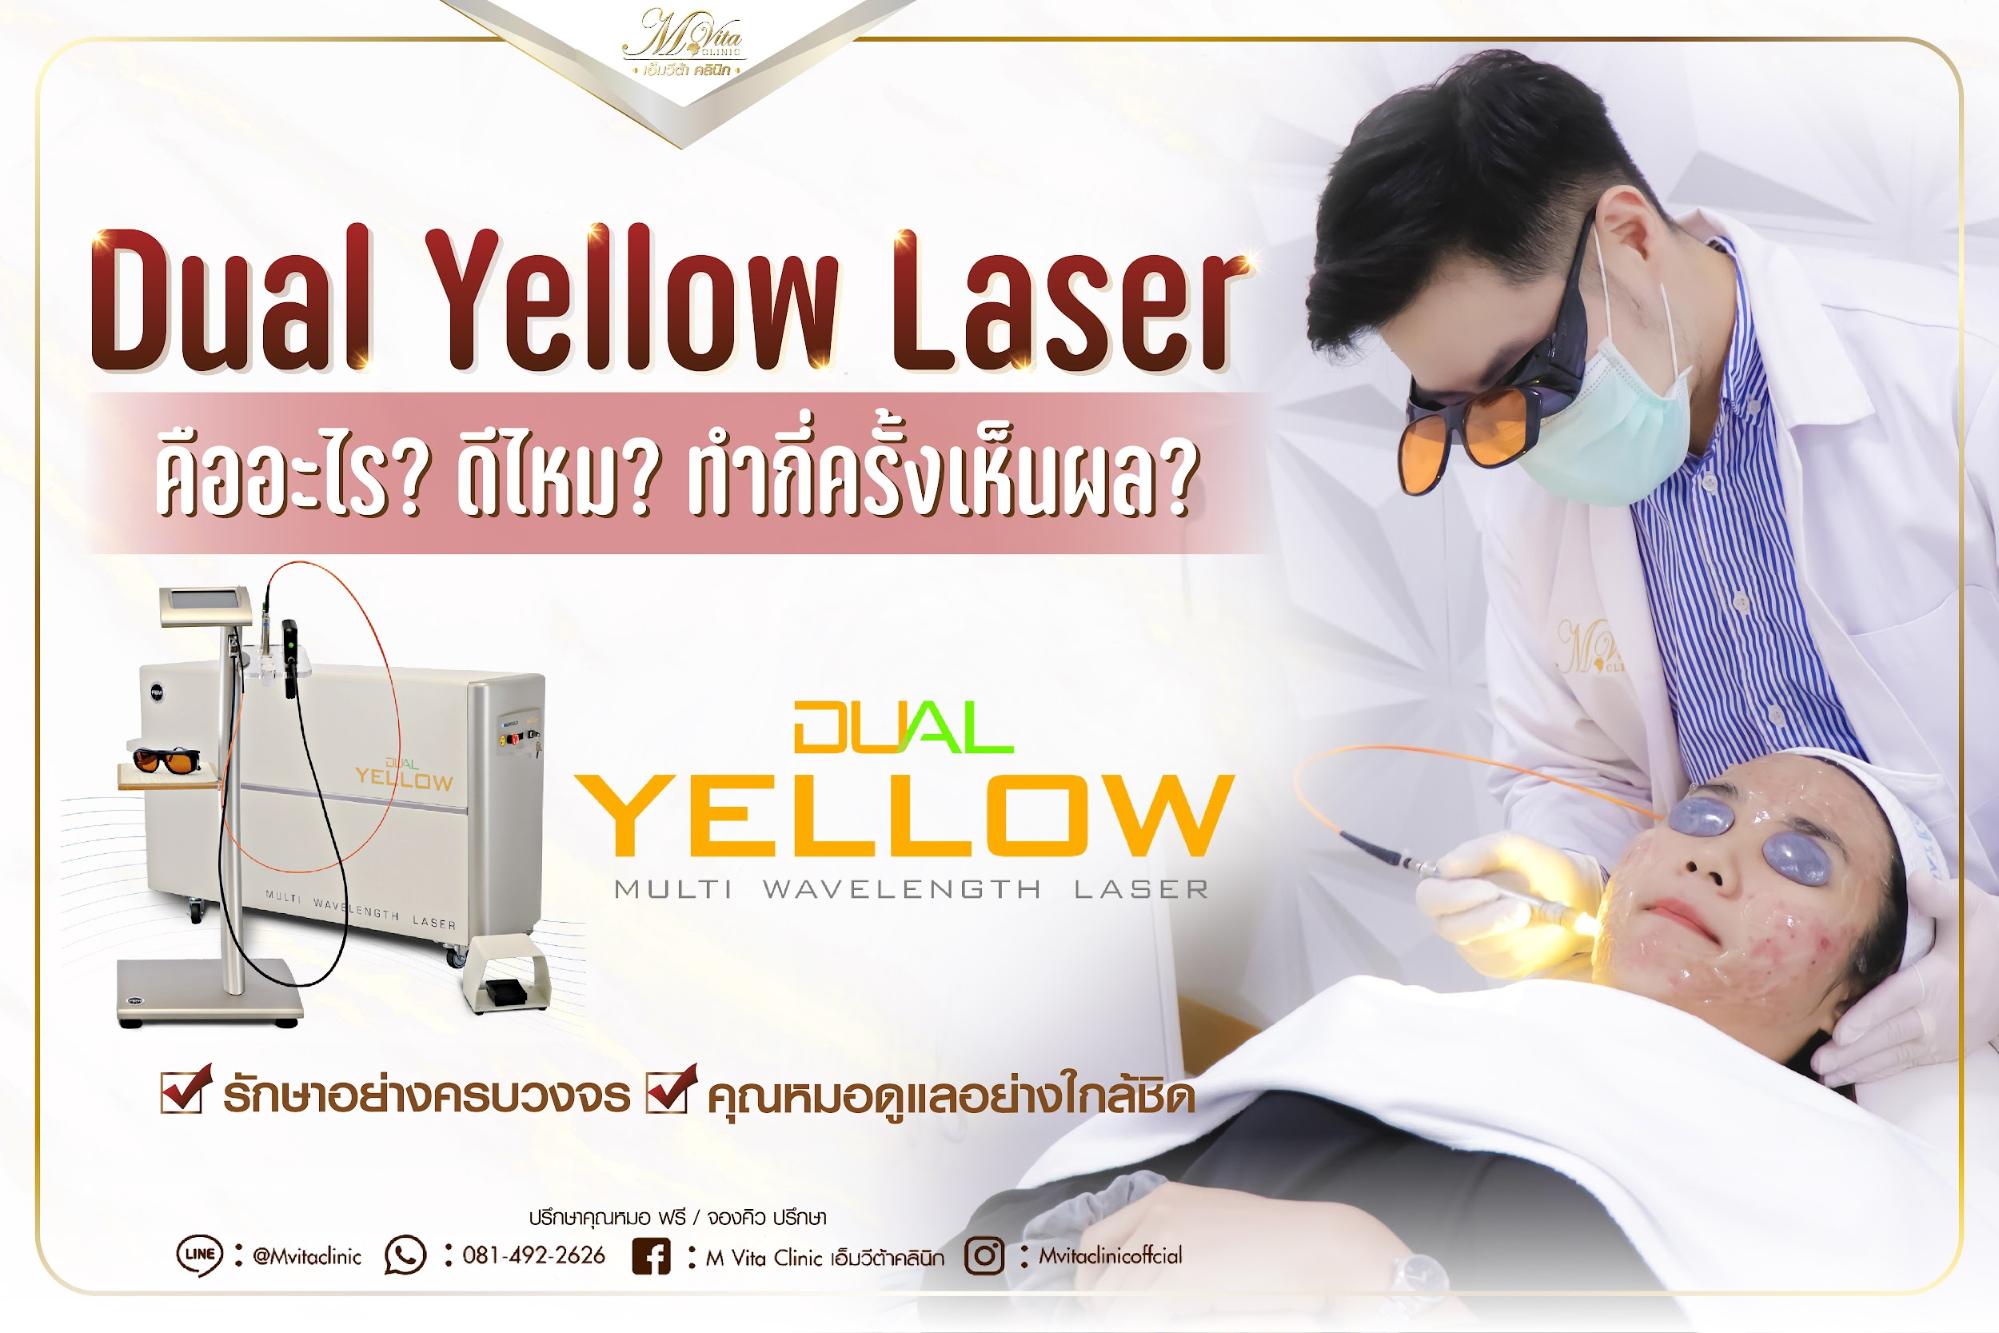 Dual Yellow Laser